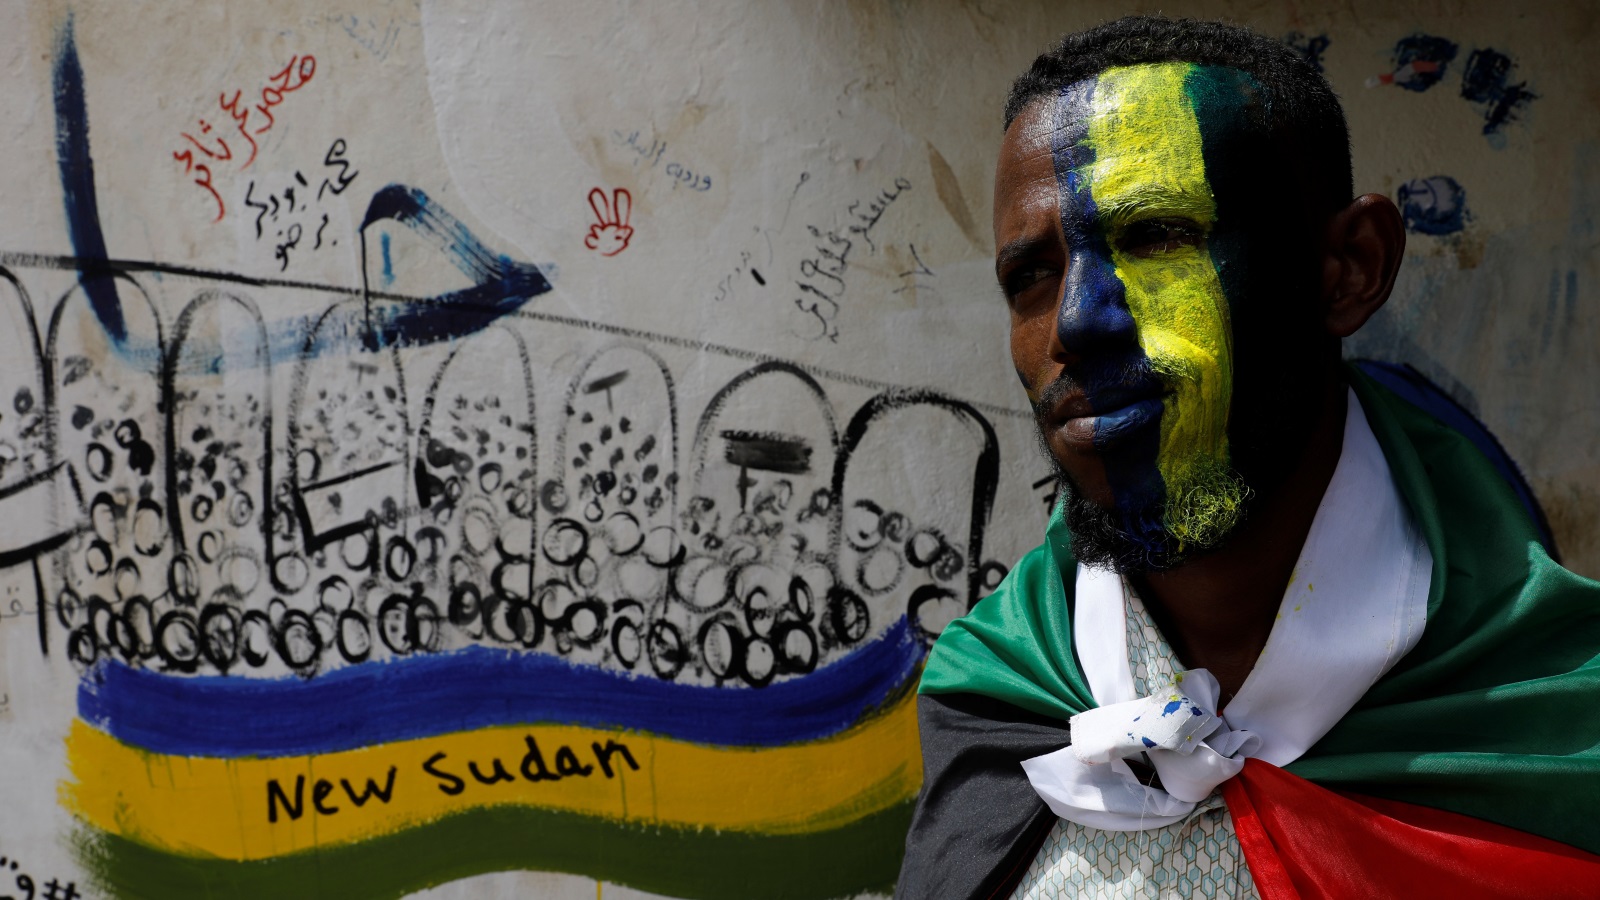 جدارية تعبر عن السودان الجديد (رويترز)